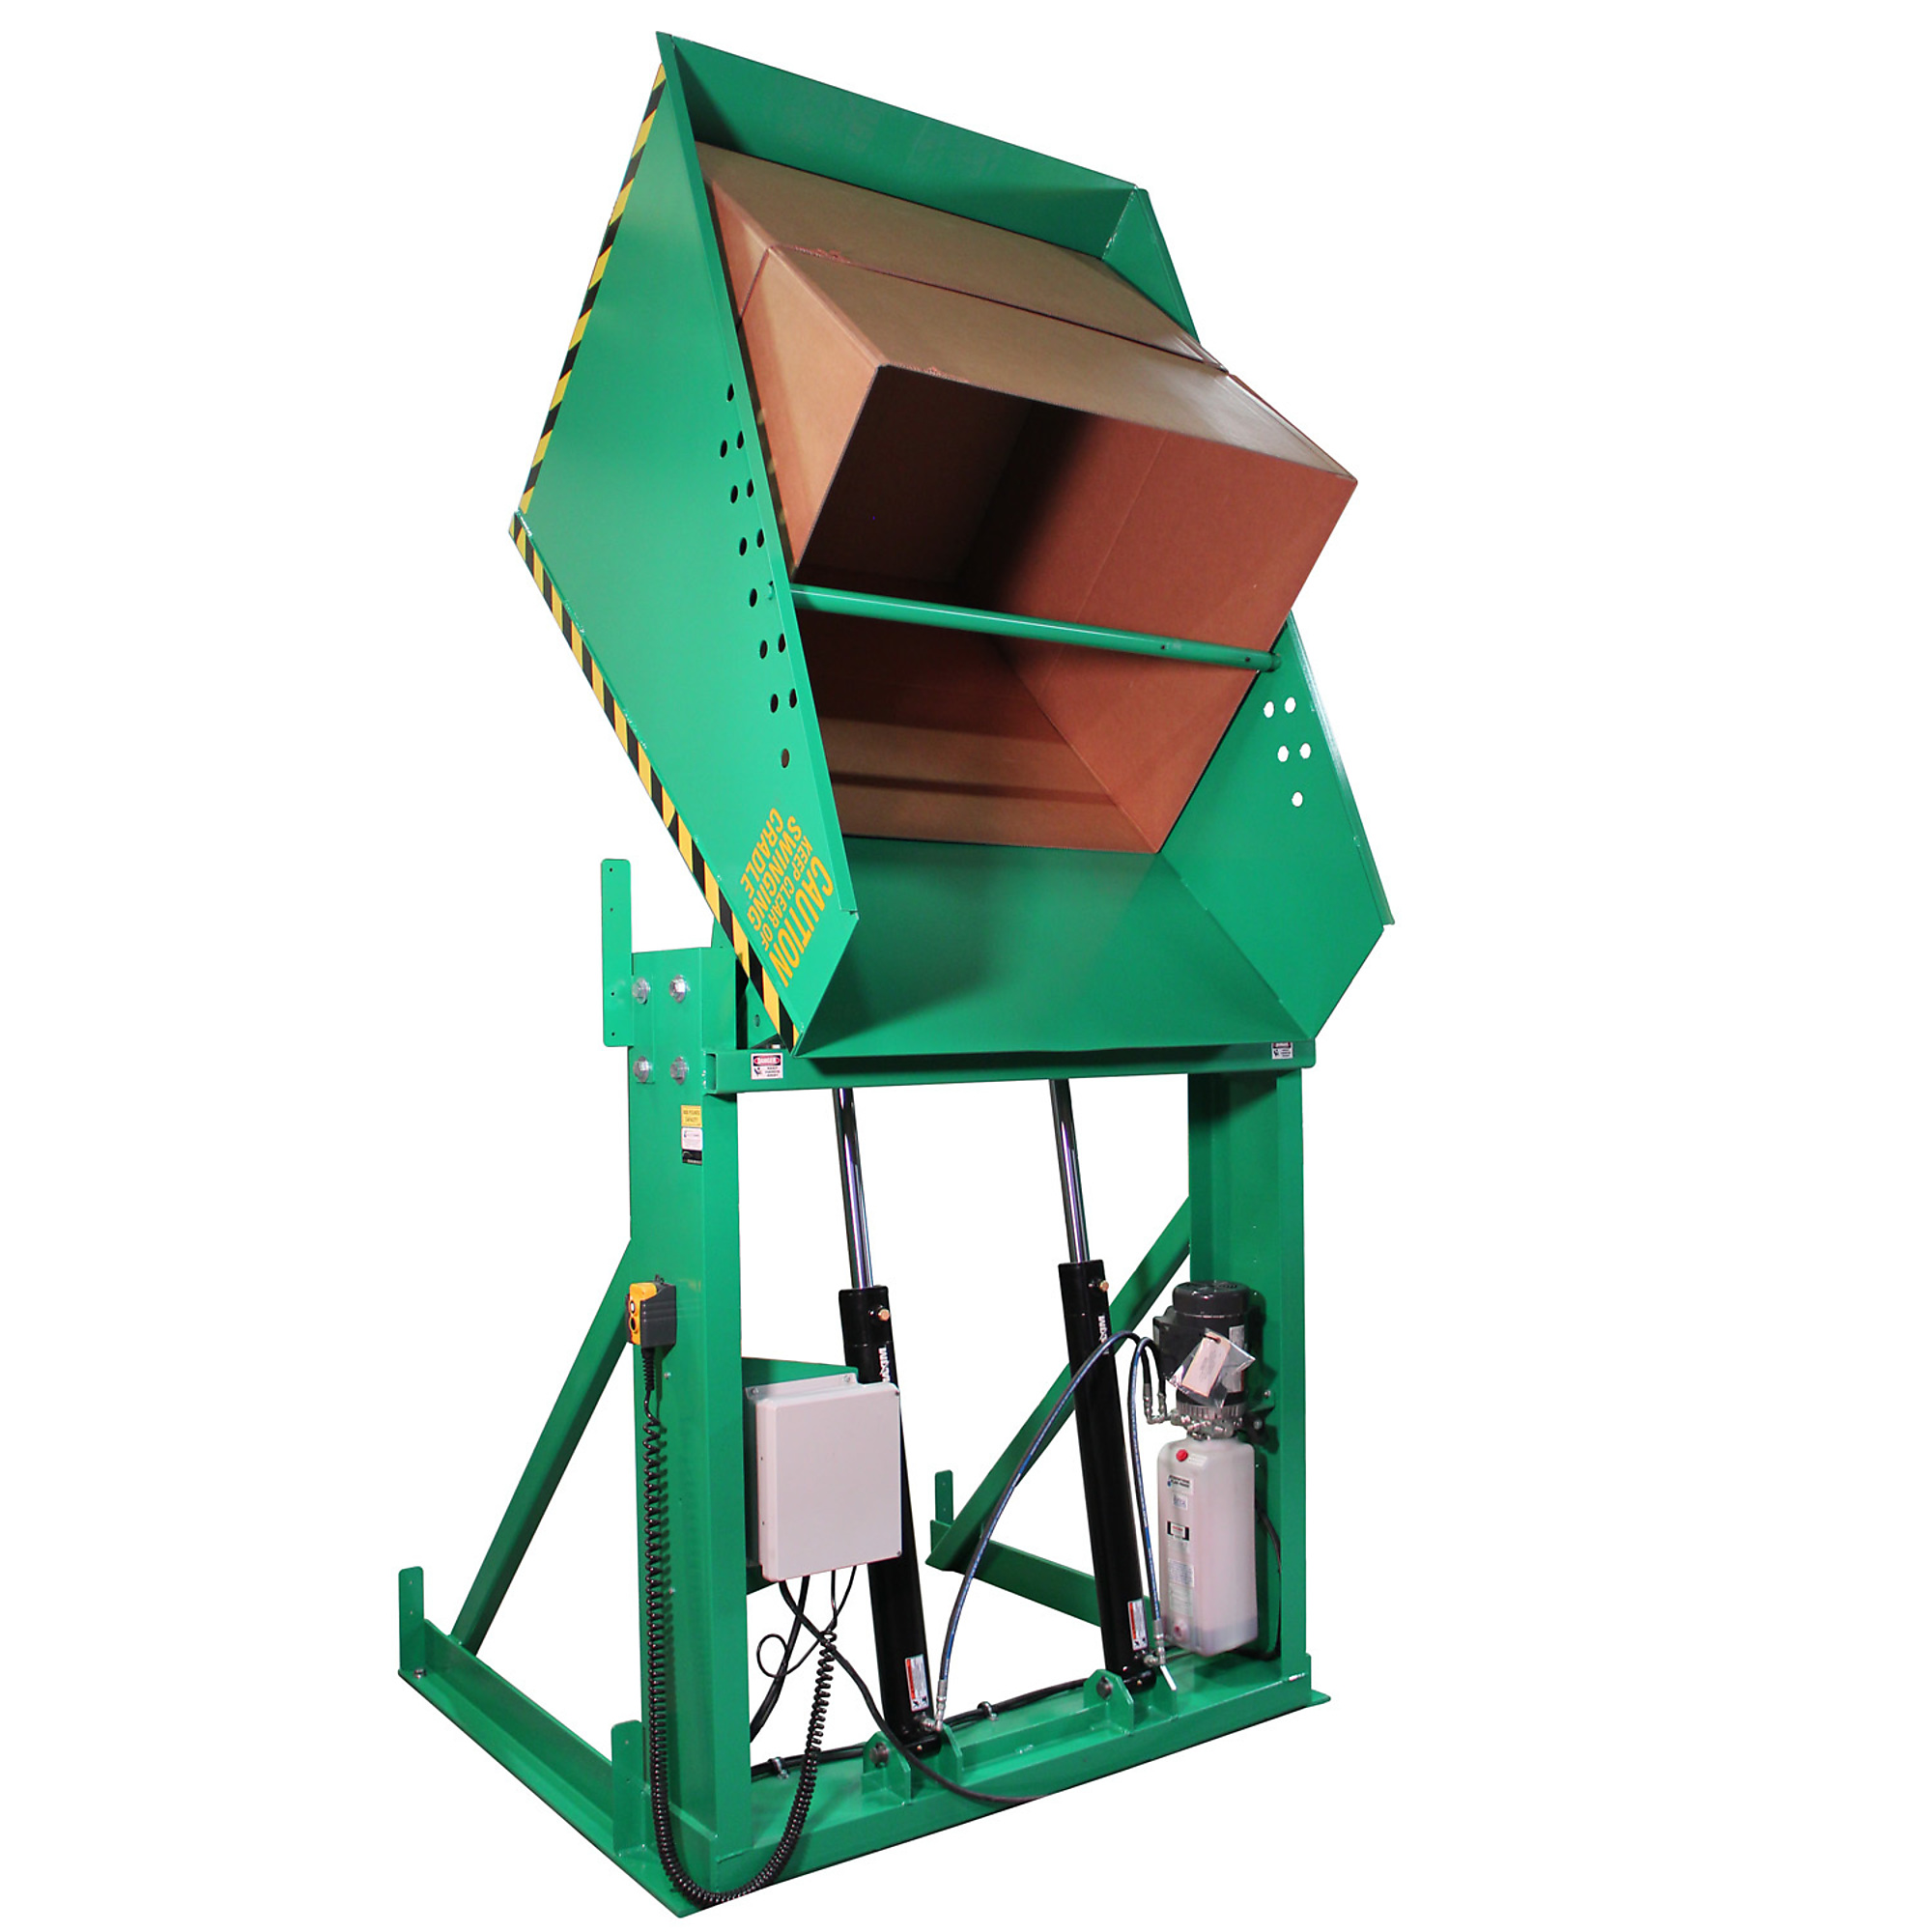 Valley Craft, Box Dumper, 36x36Inch Chute, Capacity 4000 lb, Color Green, Model F80186A6